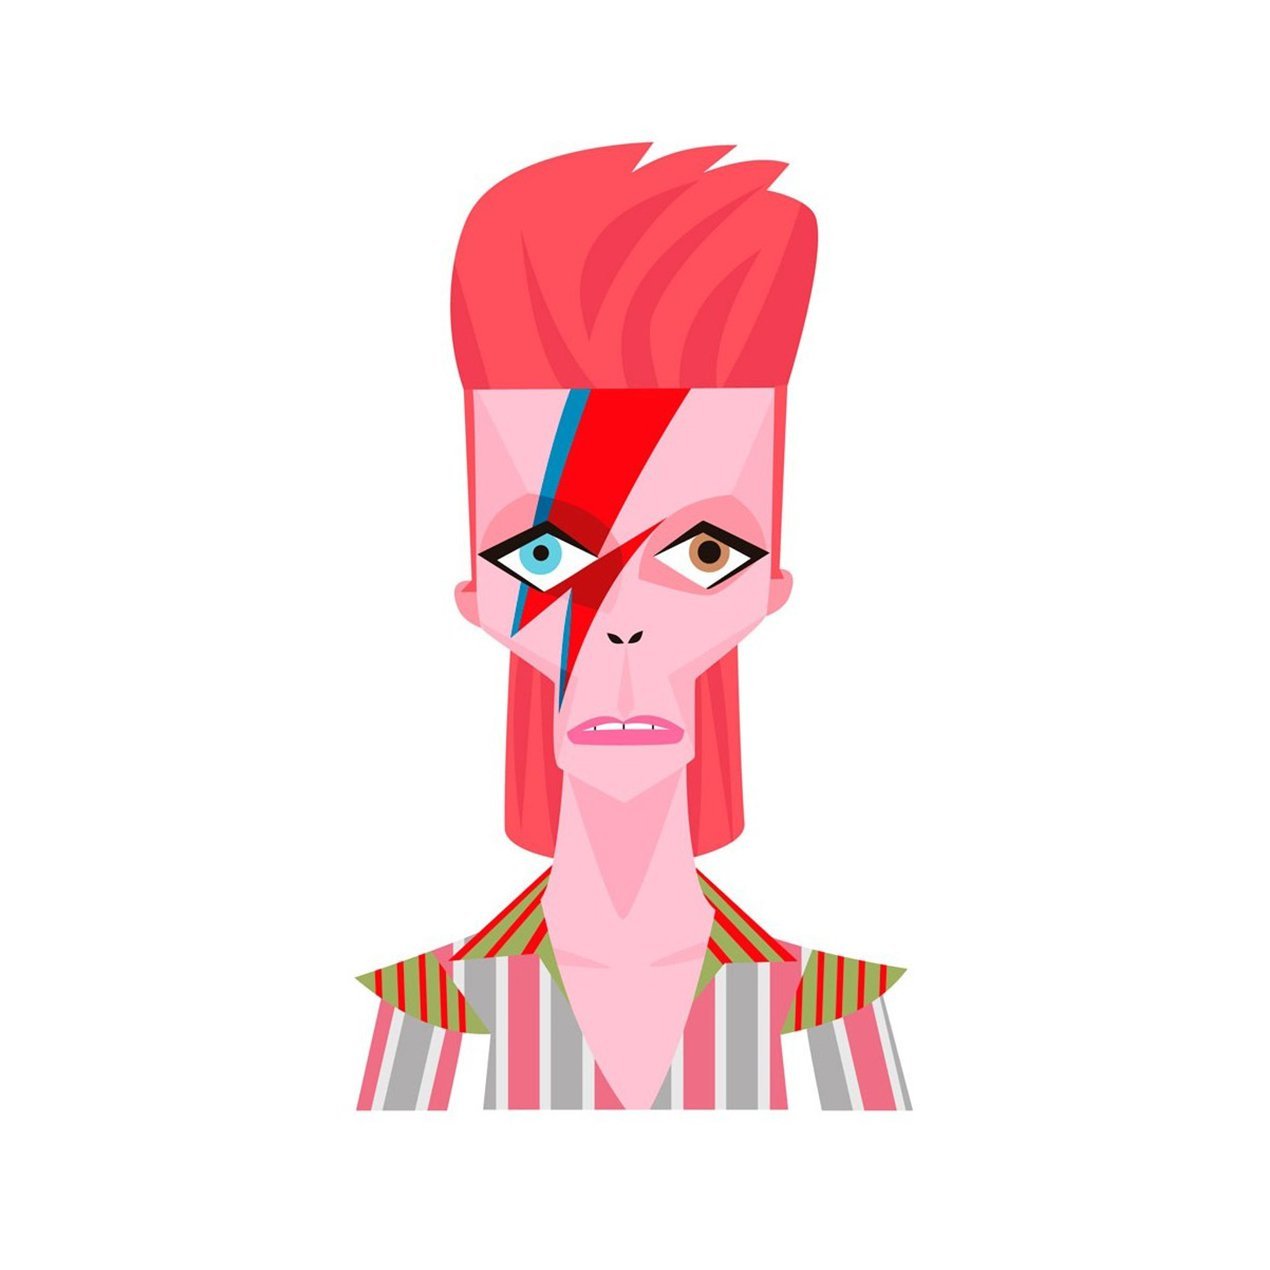 Impression sur papier Fine Art David Bowie A5